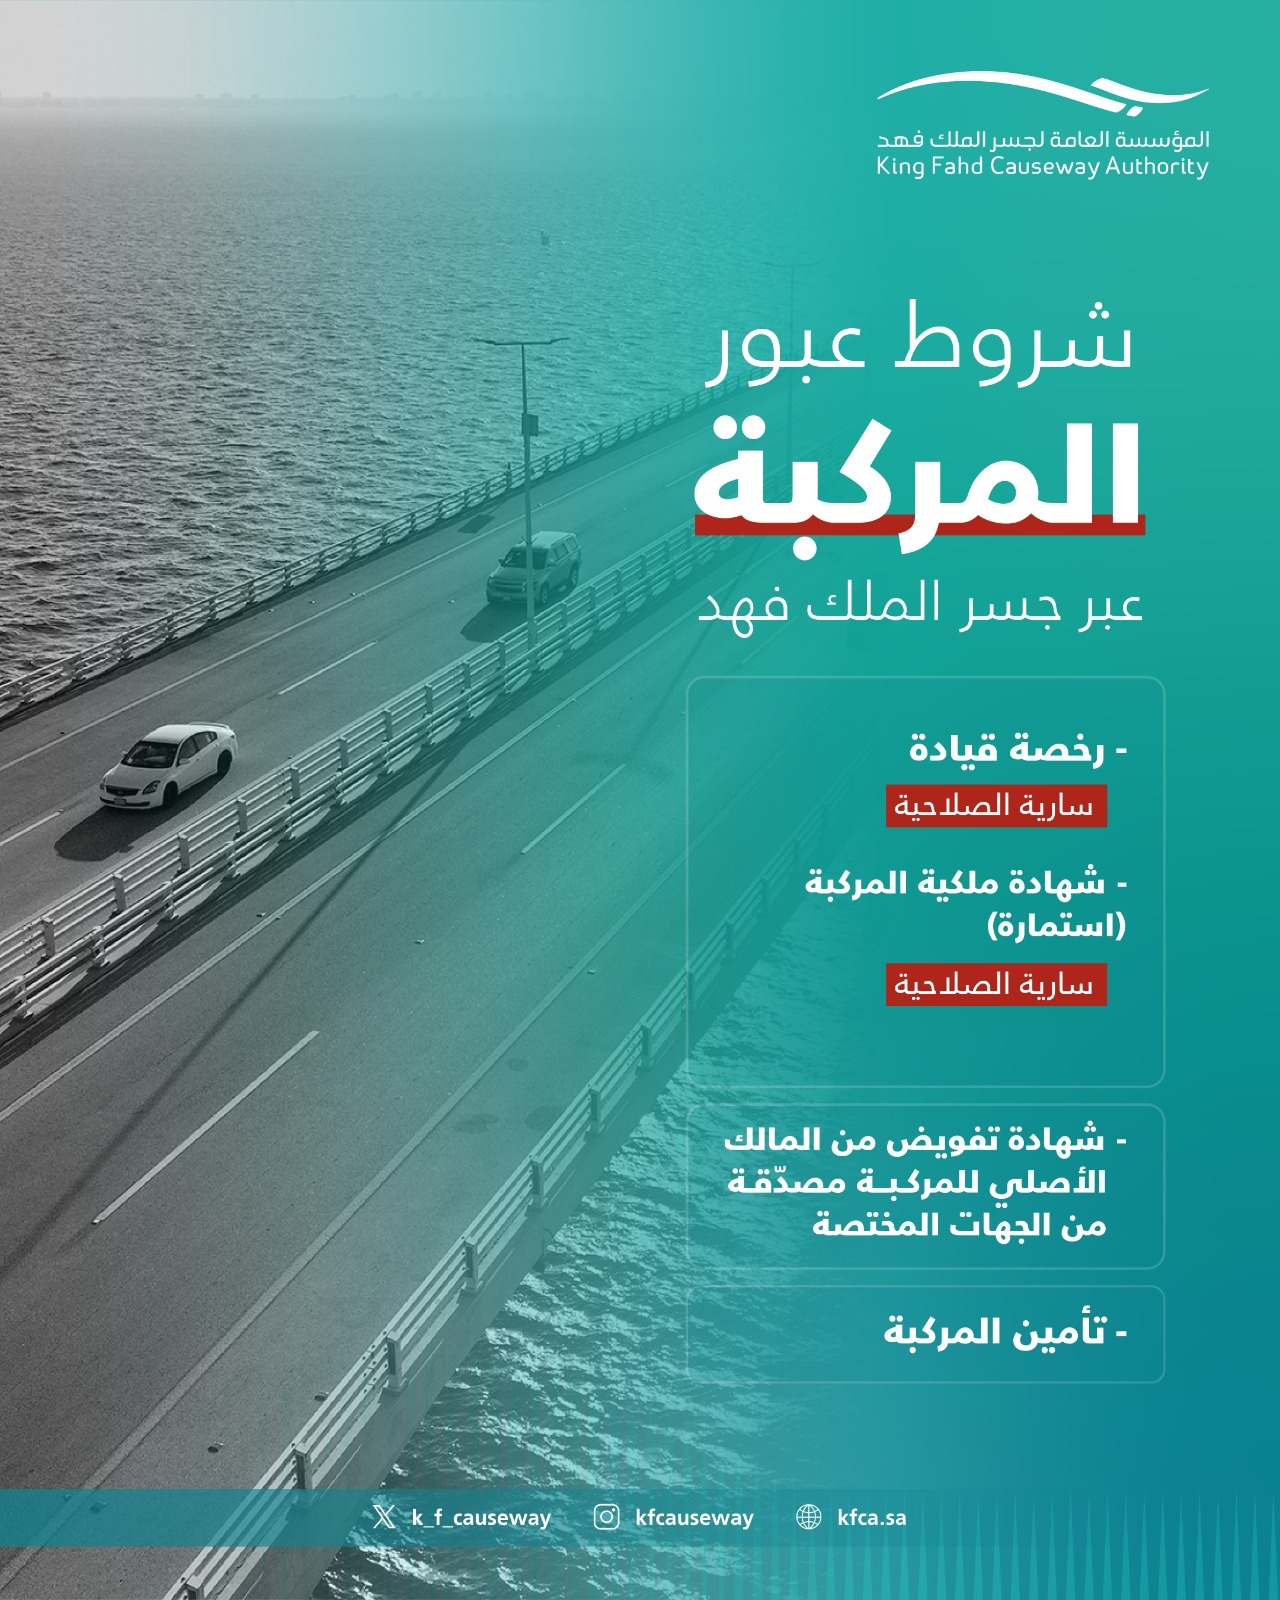 "مؤسسة جسر الملك فهد" توضح شروط عبور المركبة للجسر 3